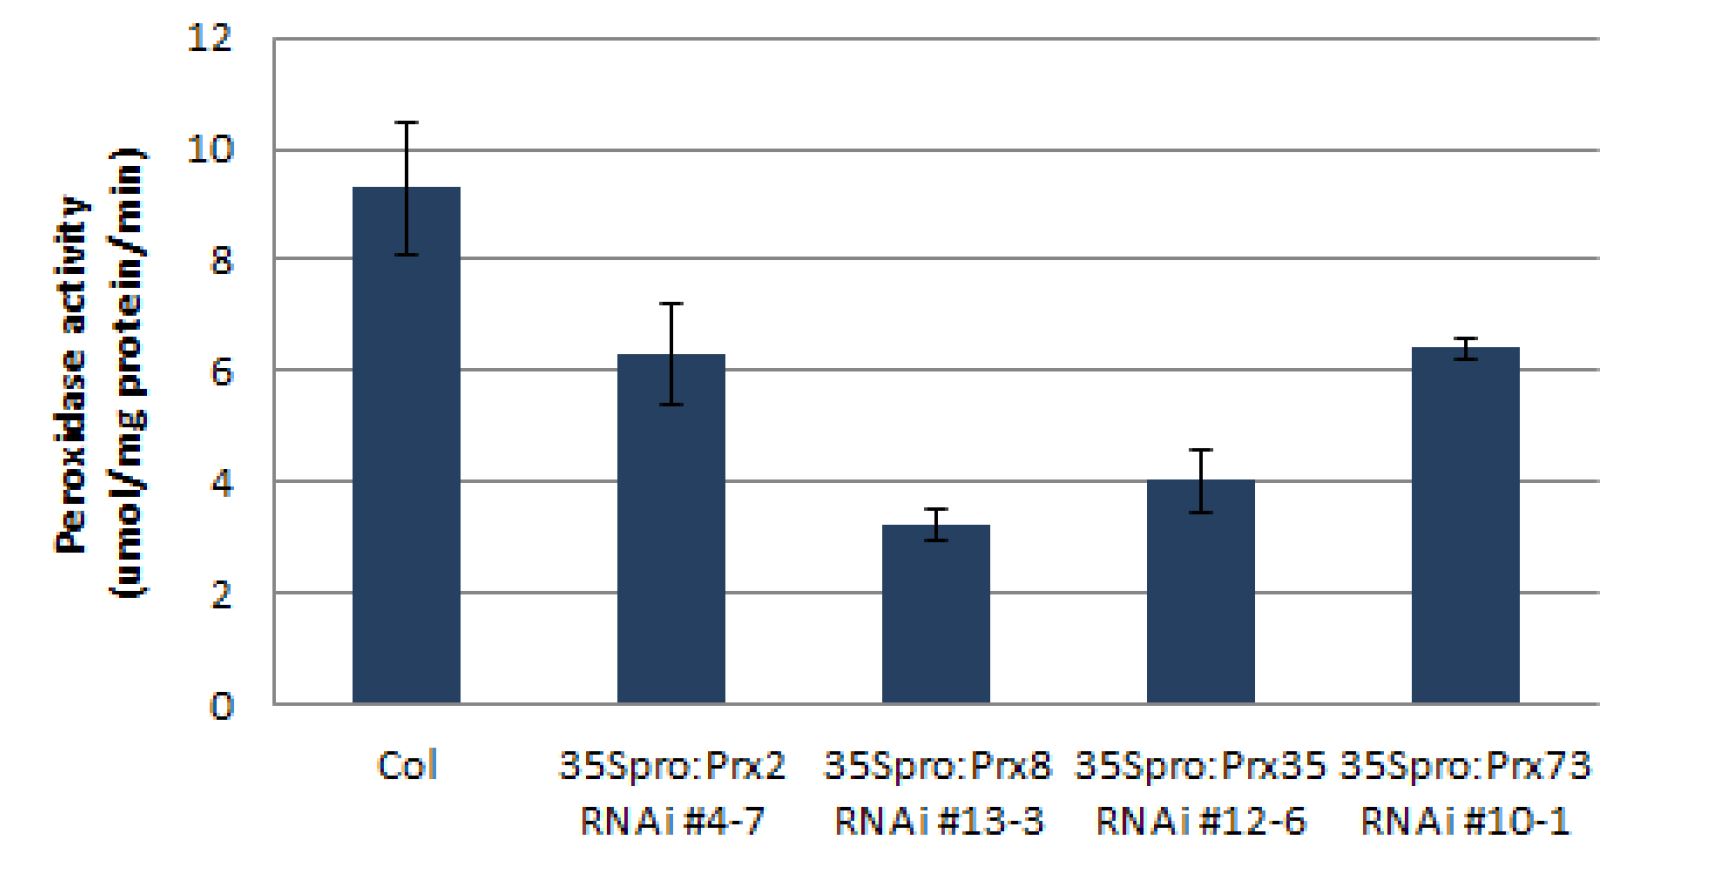 6일된 35Spro:Prx2 RNAi, 35Spro:Prx8 RNAi, 35Spro:Prx35 RNAi, 35Spro:Prx73 RNAi 형질전환 동형접합체 라인 퍼옥시다제 활성